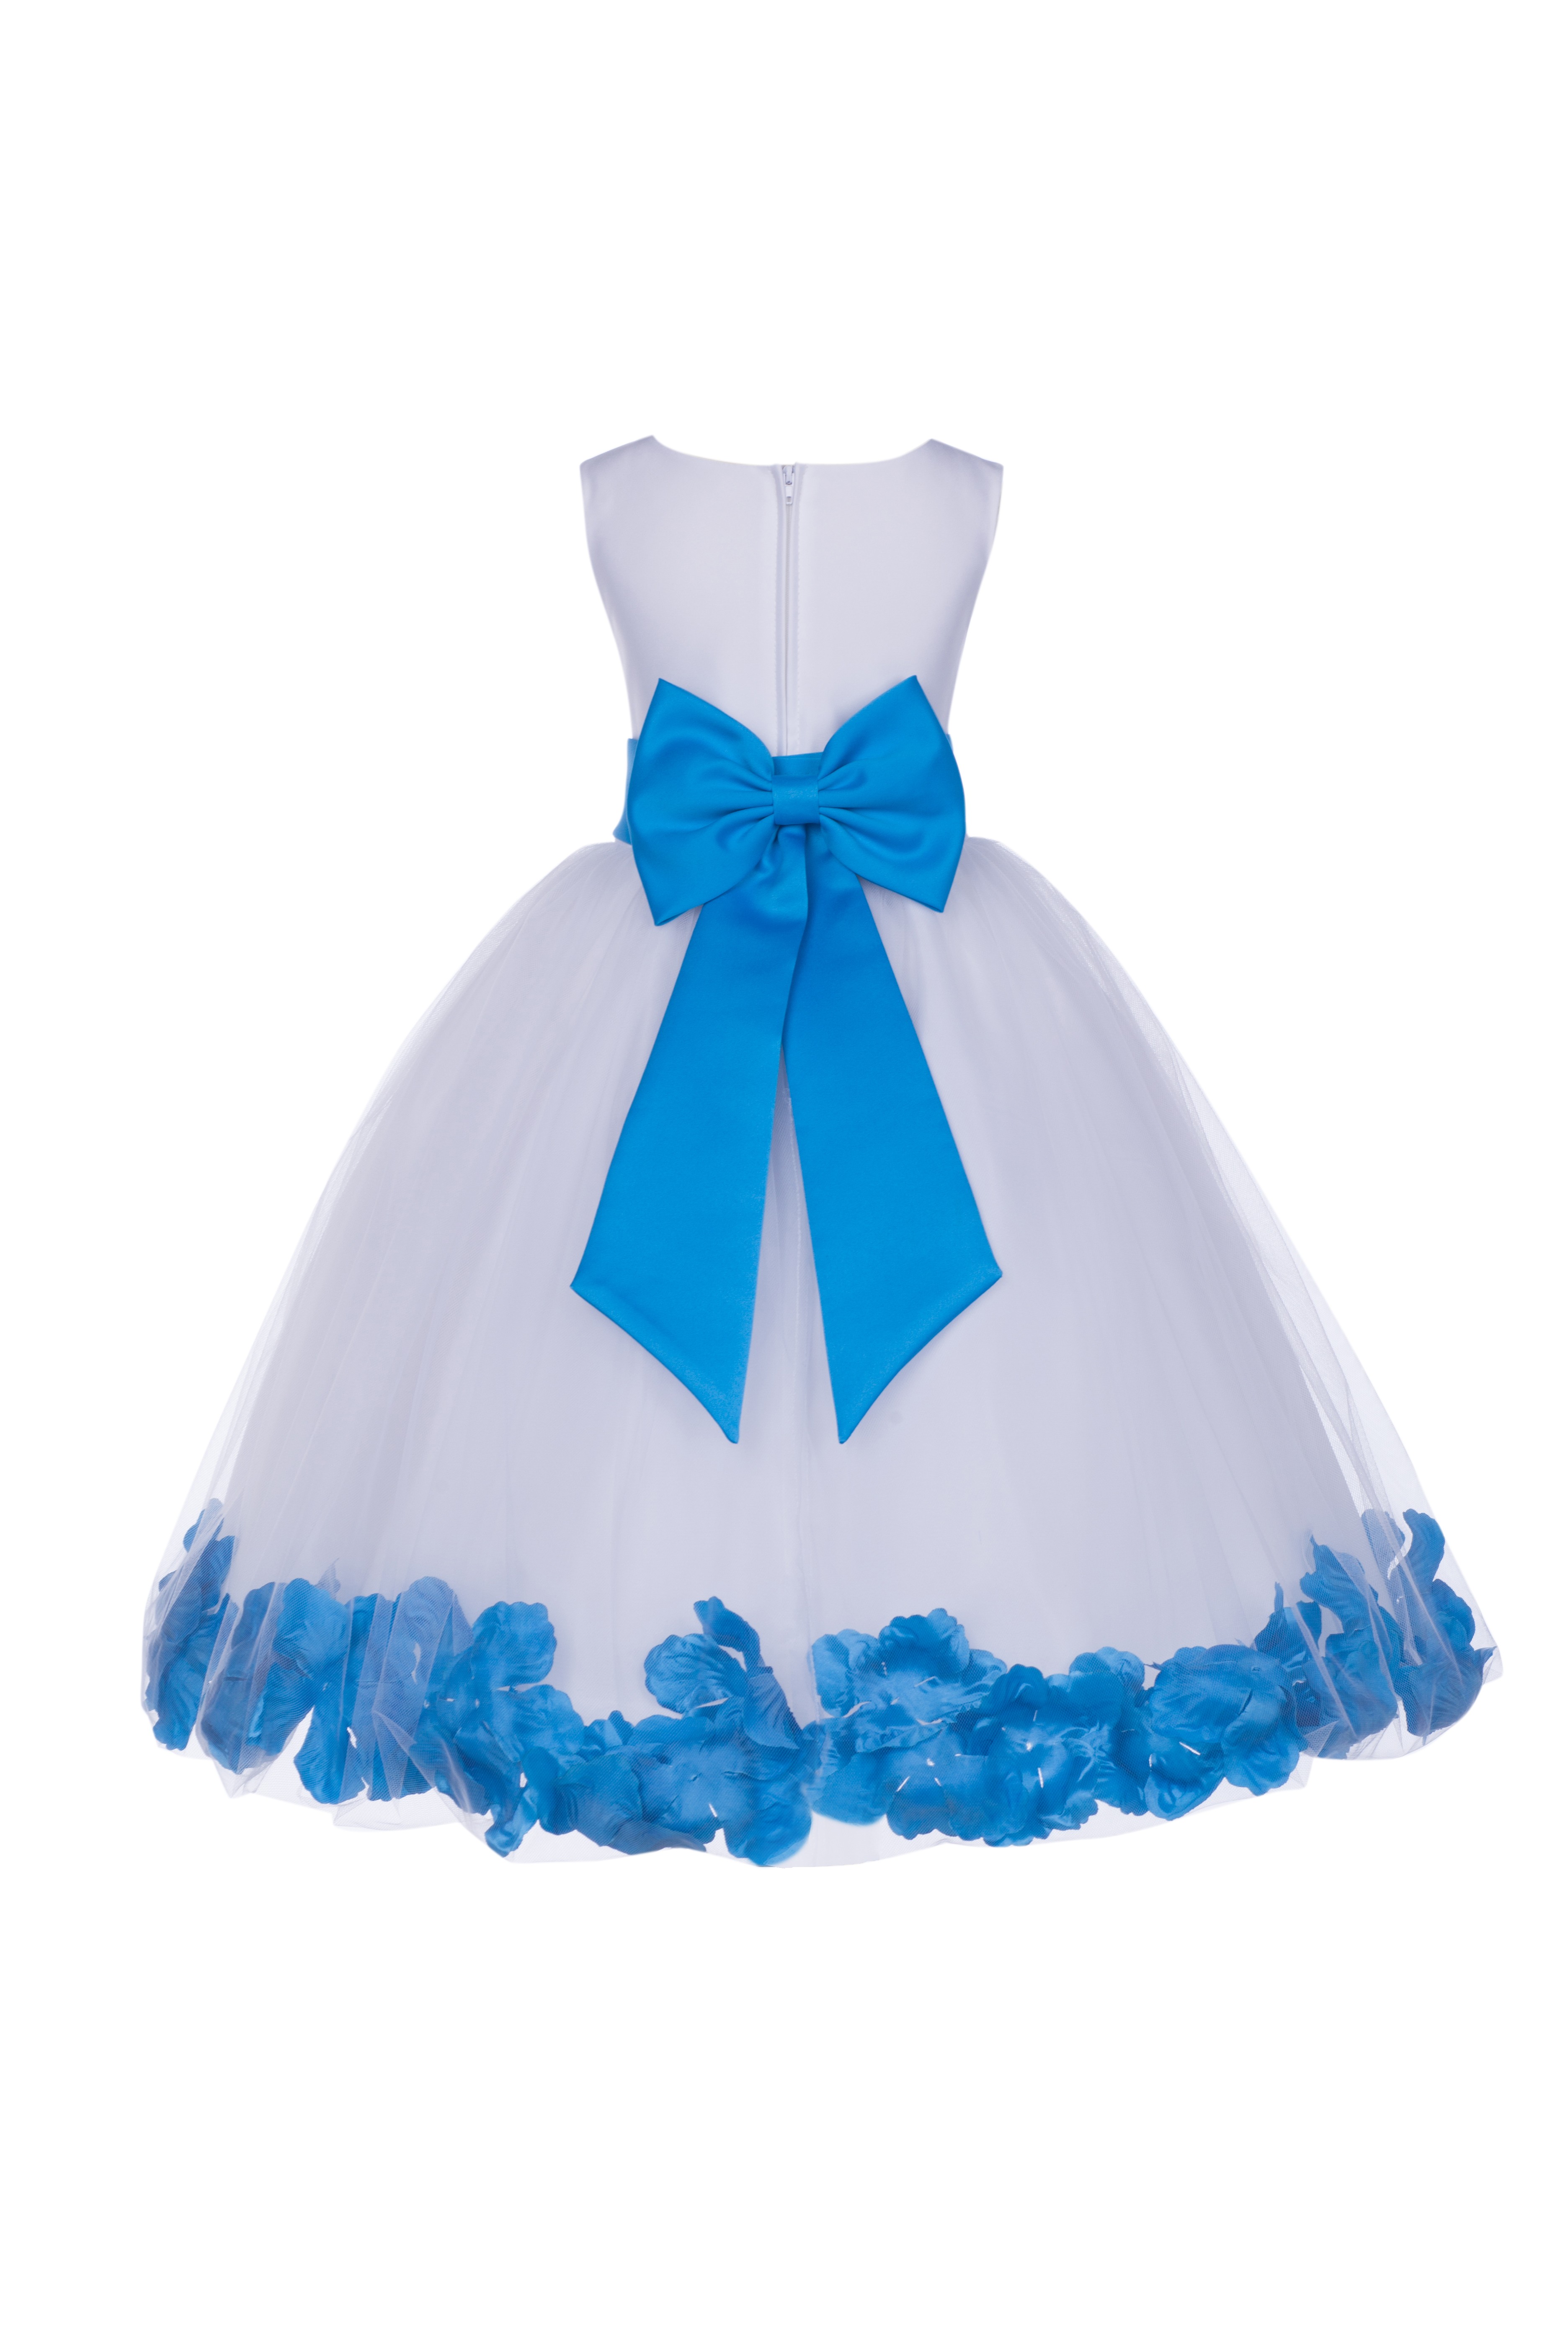 malibu blue flower girl dresses